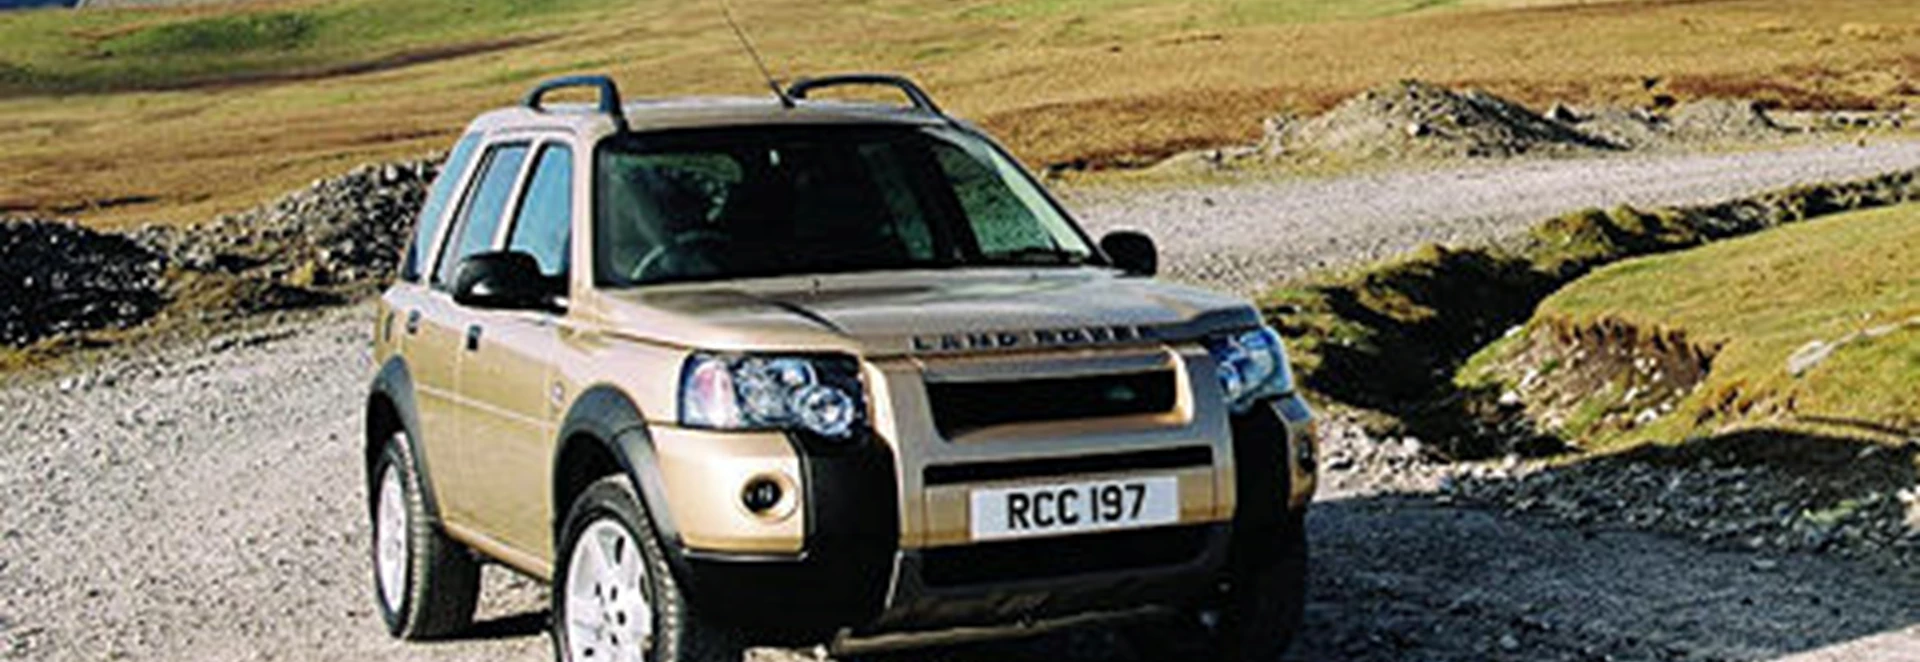 Land Rover Freelander Sport Td4 Three-Door 